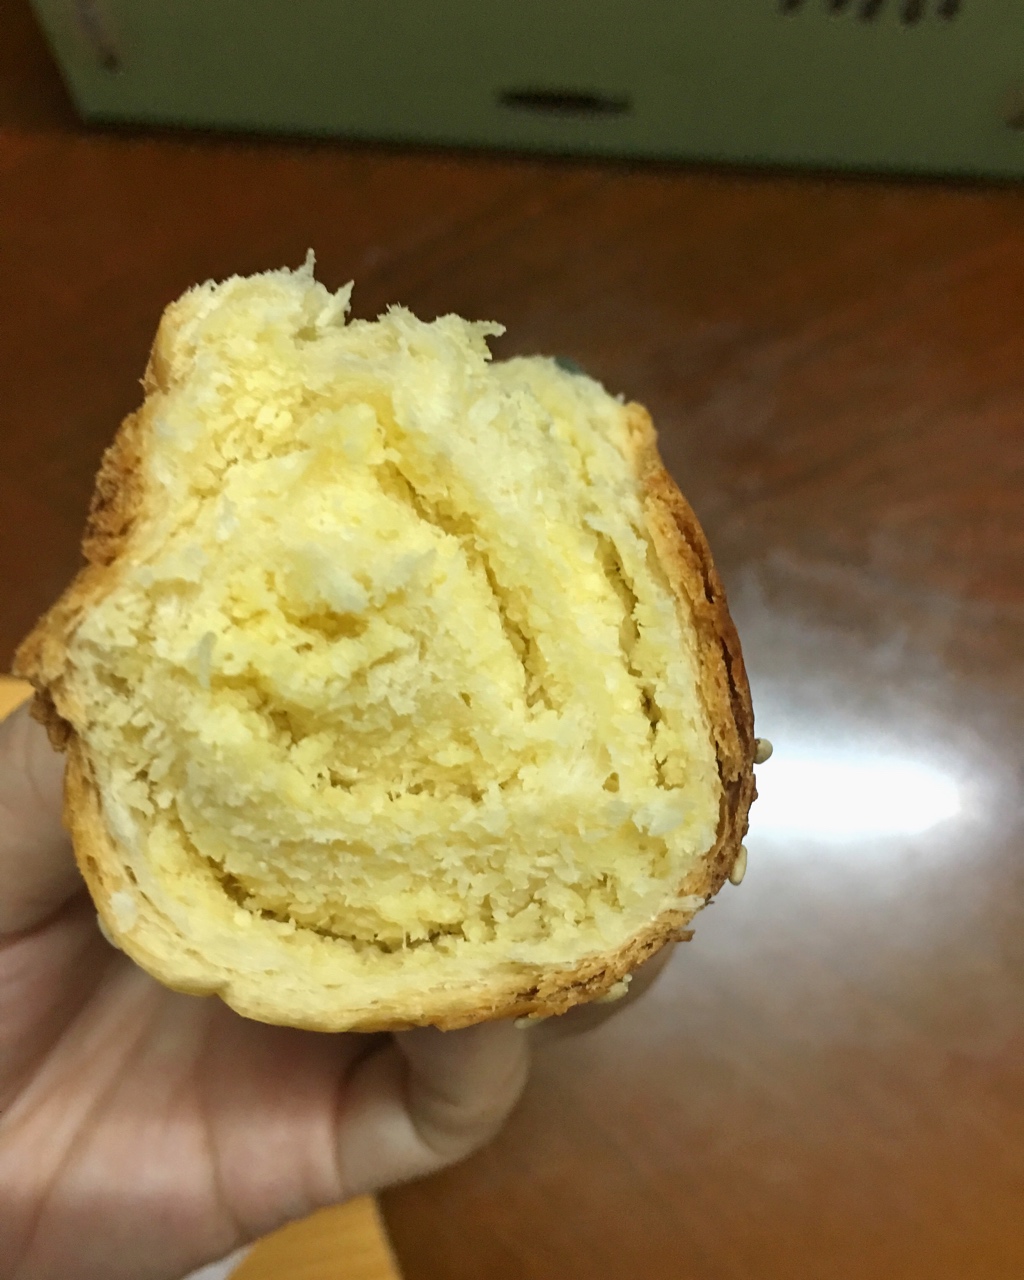 朱小妮同学做的椰蓉面包卷